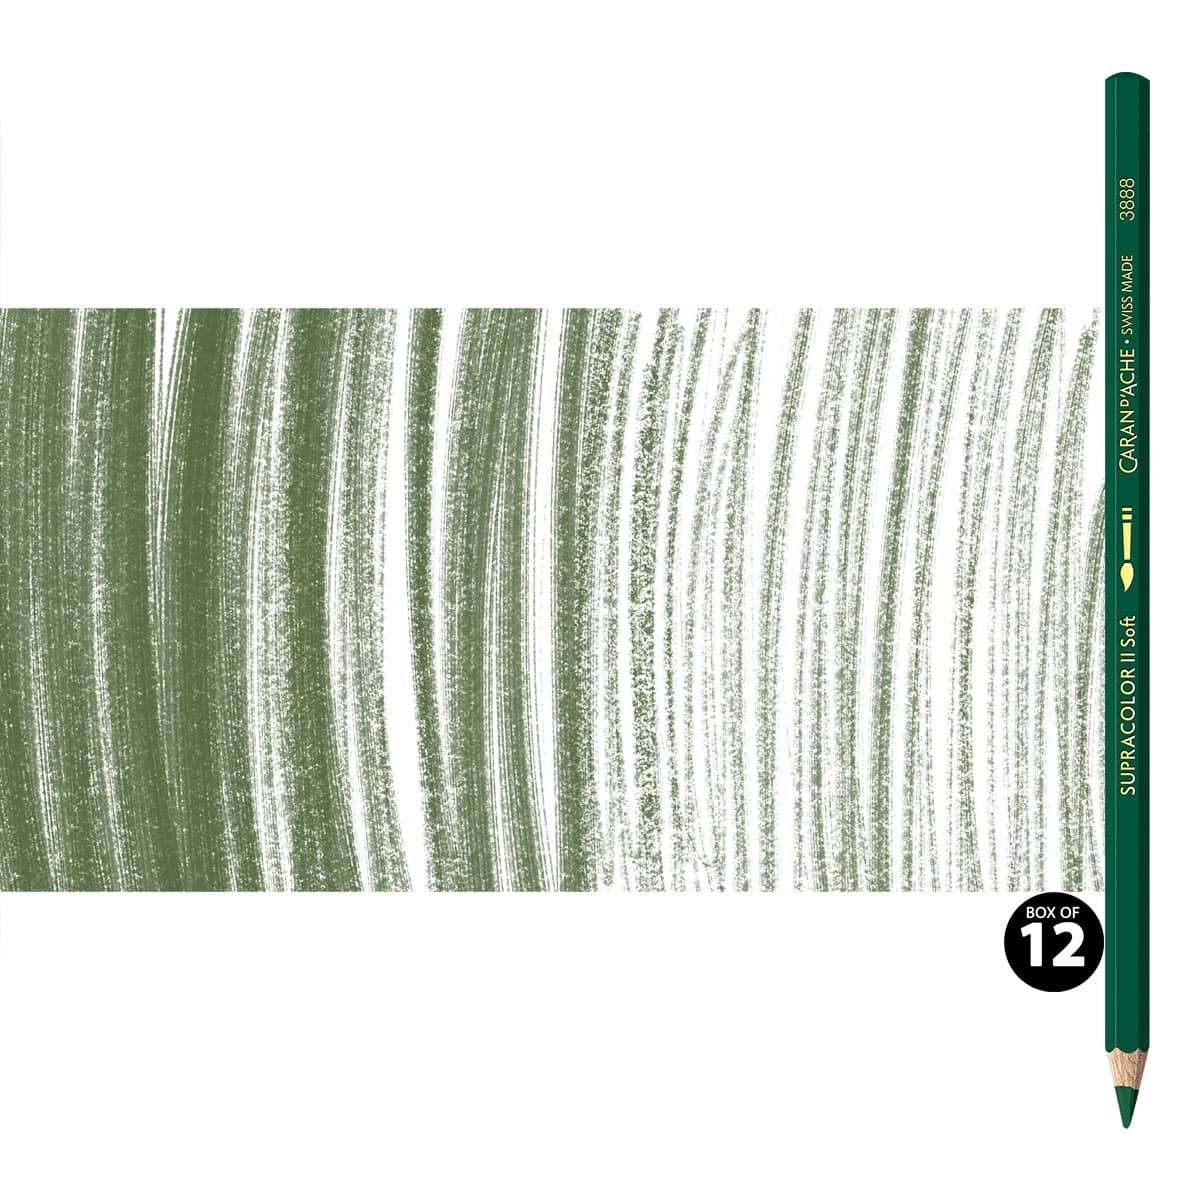 Supracolor II Watercolor Pencils Box of 12 No. 229 - Dark Green